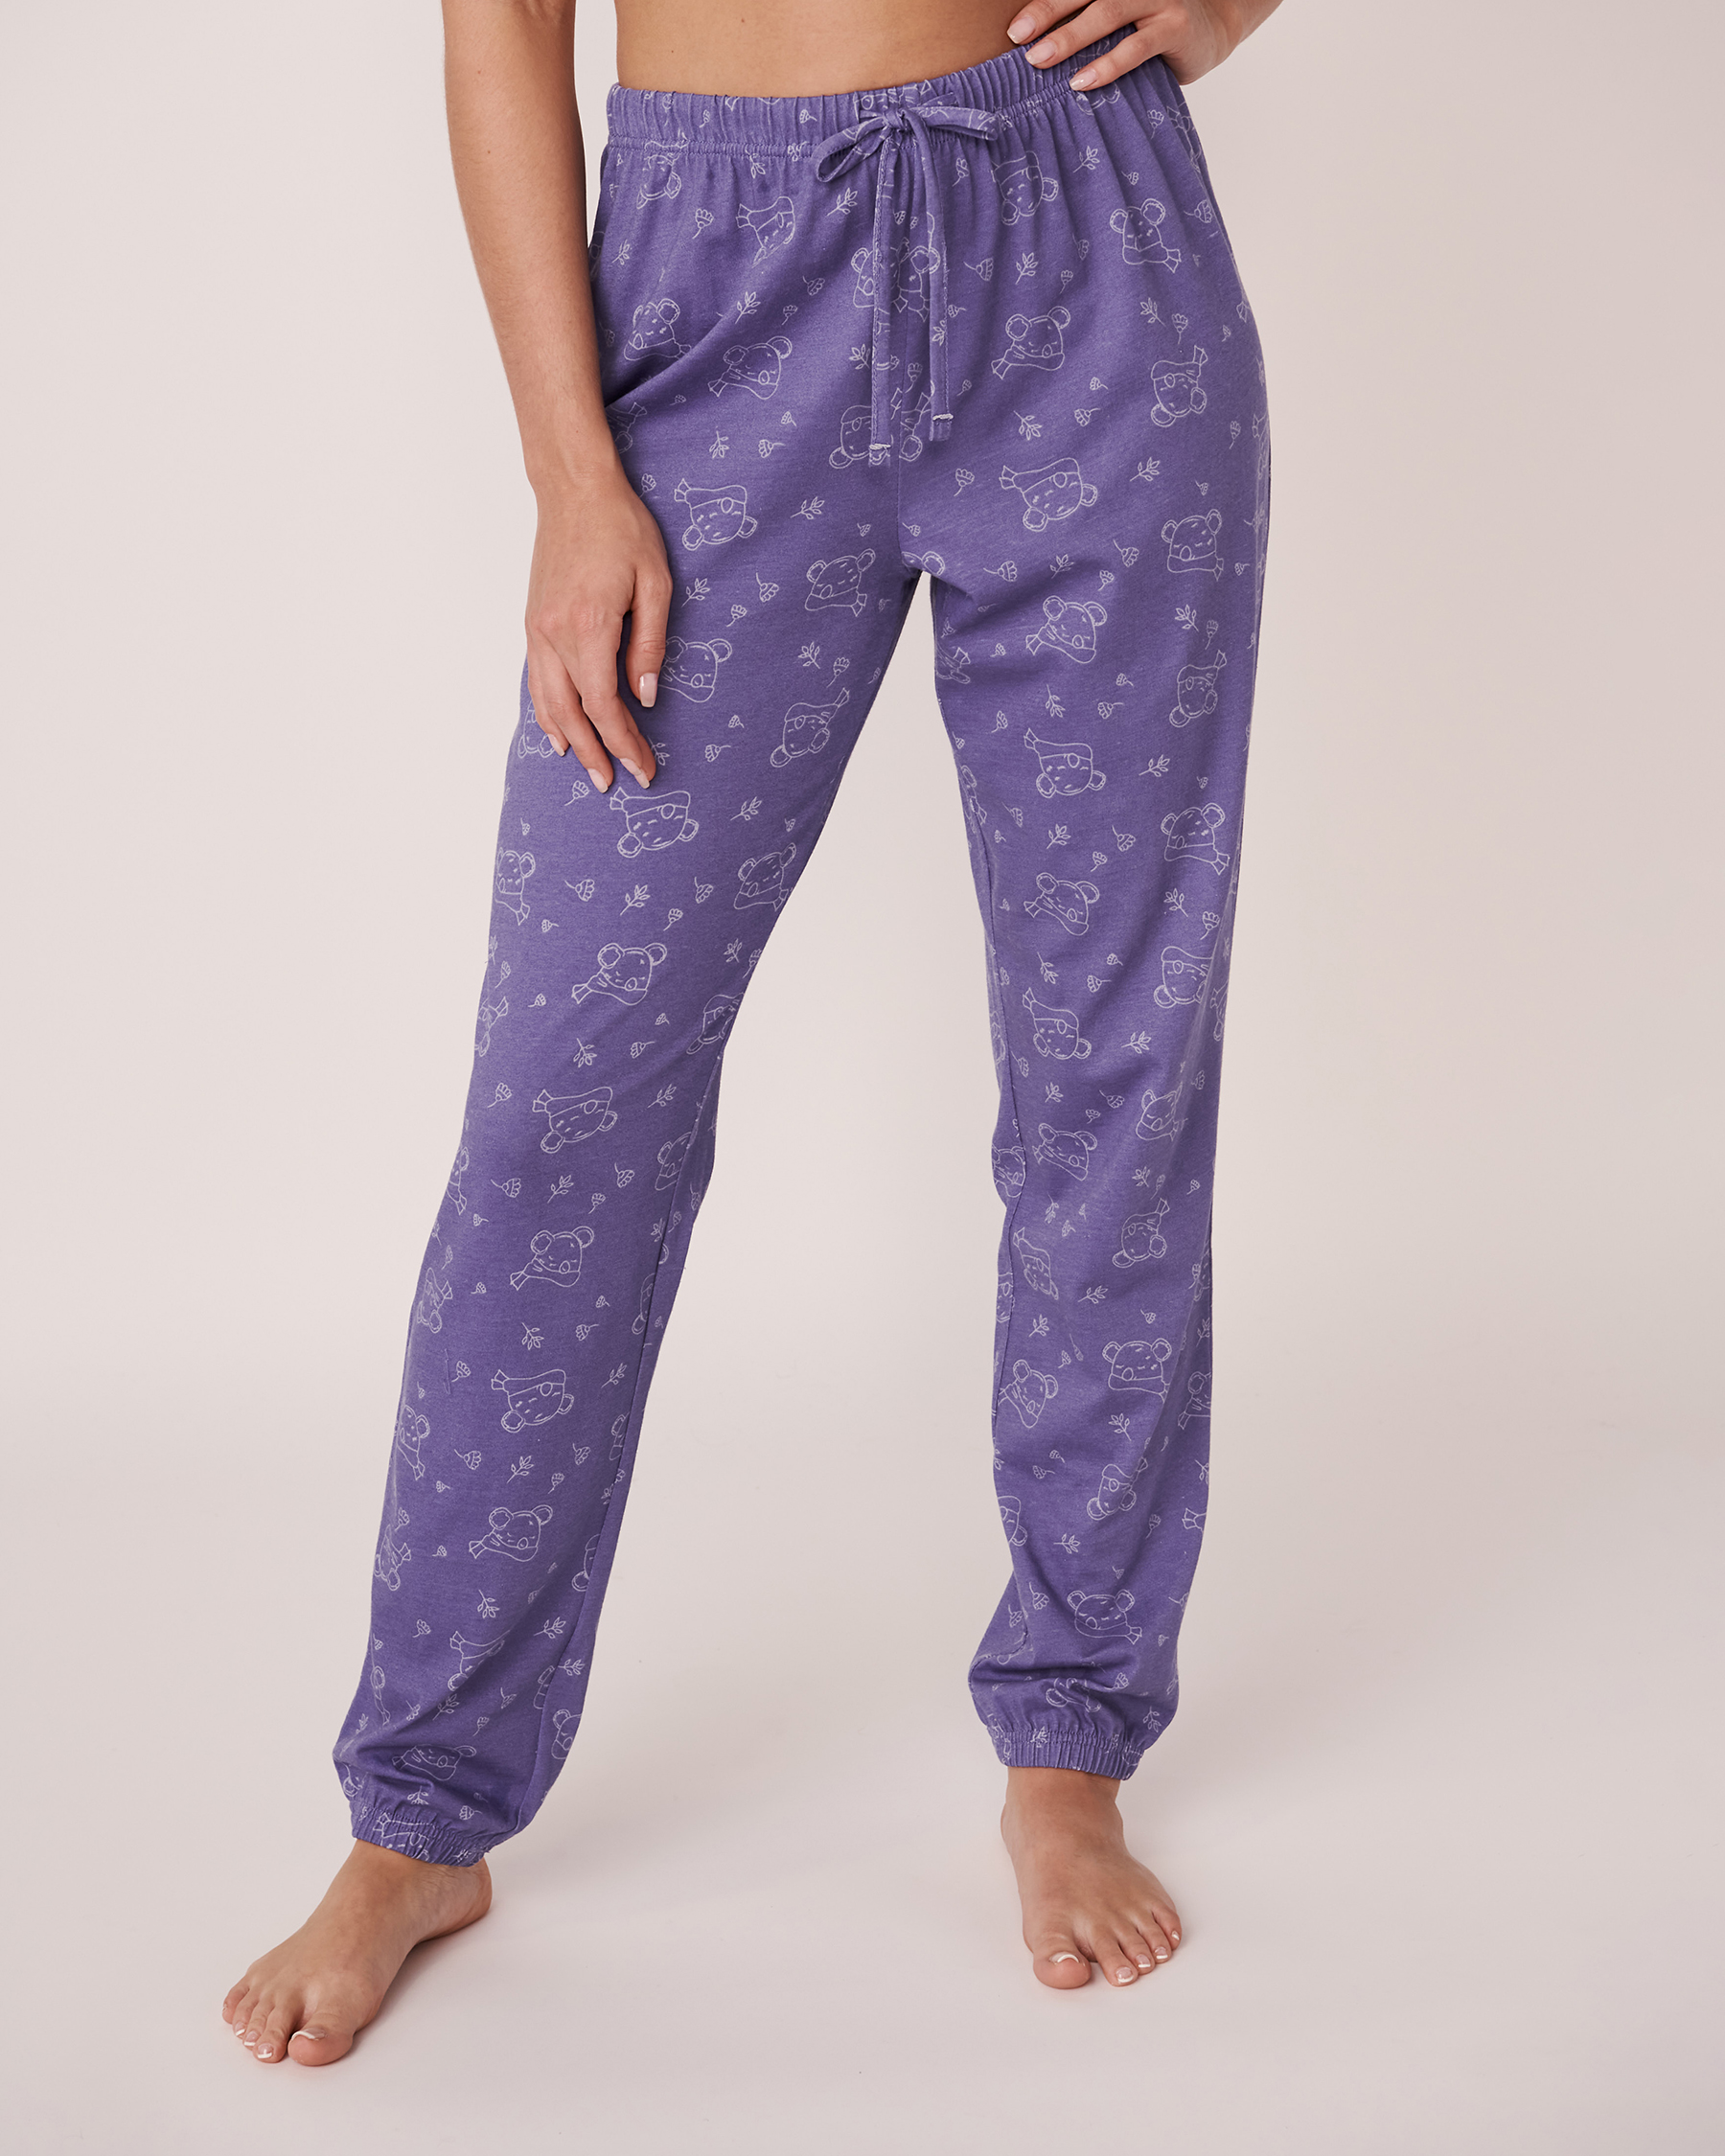 La Vie en Rose Cotton Pyjama Pants. 1